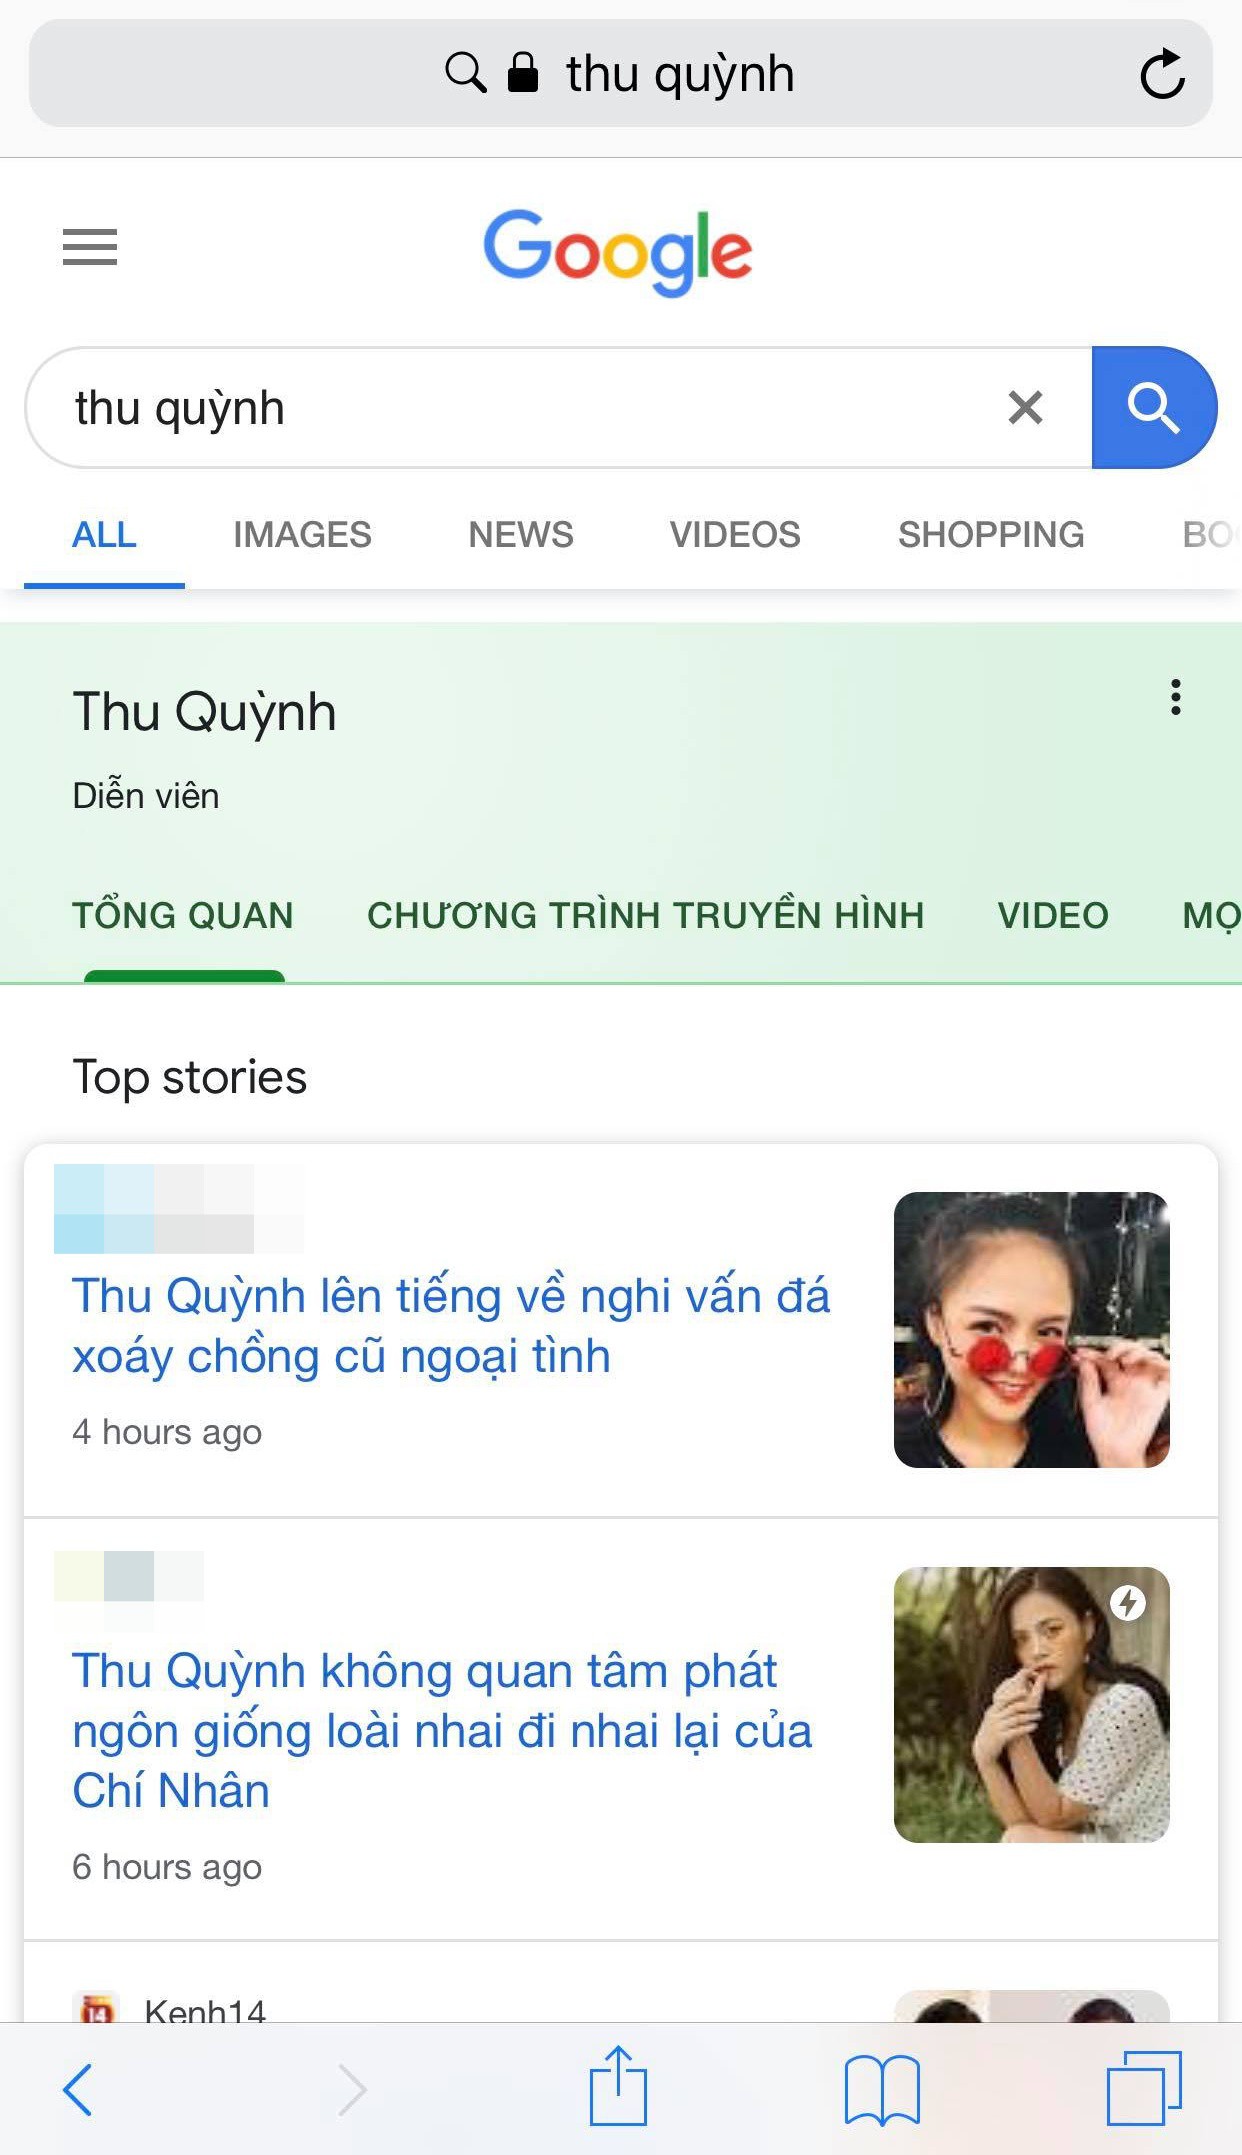 Hậu lùm xùm hôn nhân Google trả kết quả: Thu Quỳnh là  diễn viên , Chí Nhân là  chồng cũ Thu Quỳnh  còn Minh Hà là  nobody 